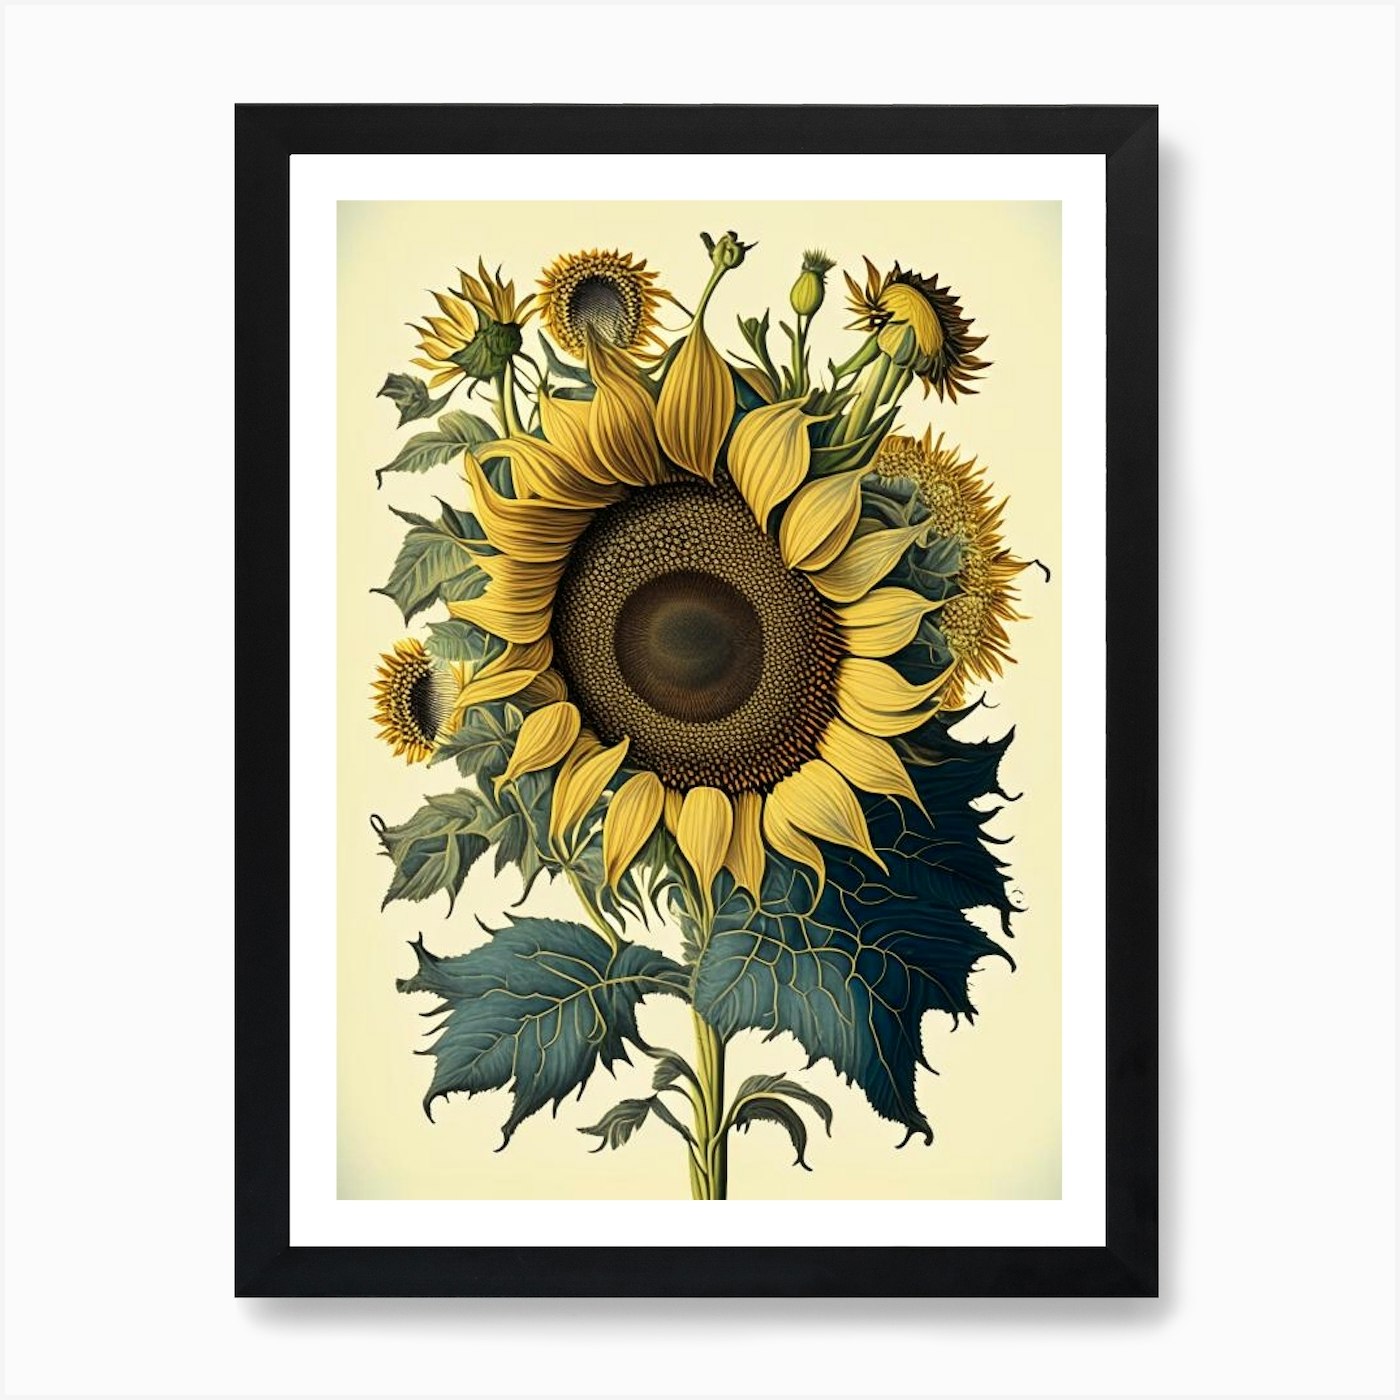 Petal Sunflower Art 3 Fy Poster by Vintage Flower Botanical Print Palette - Floral